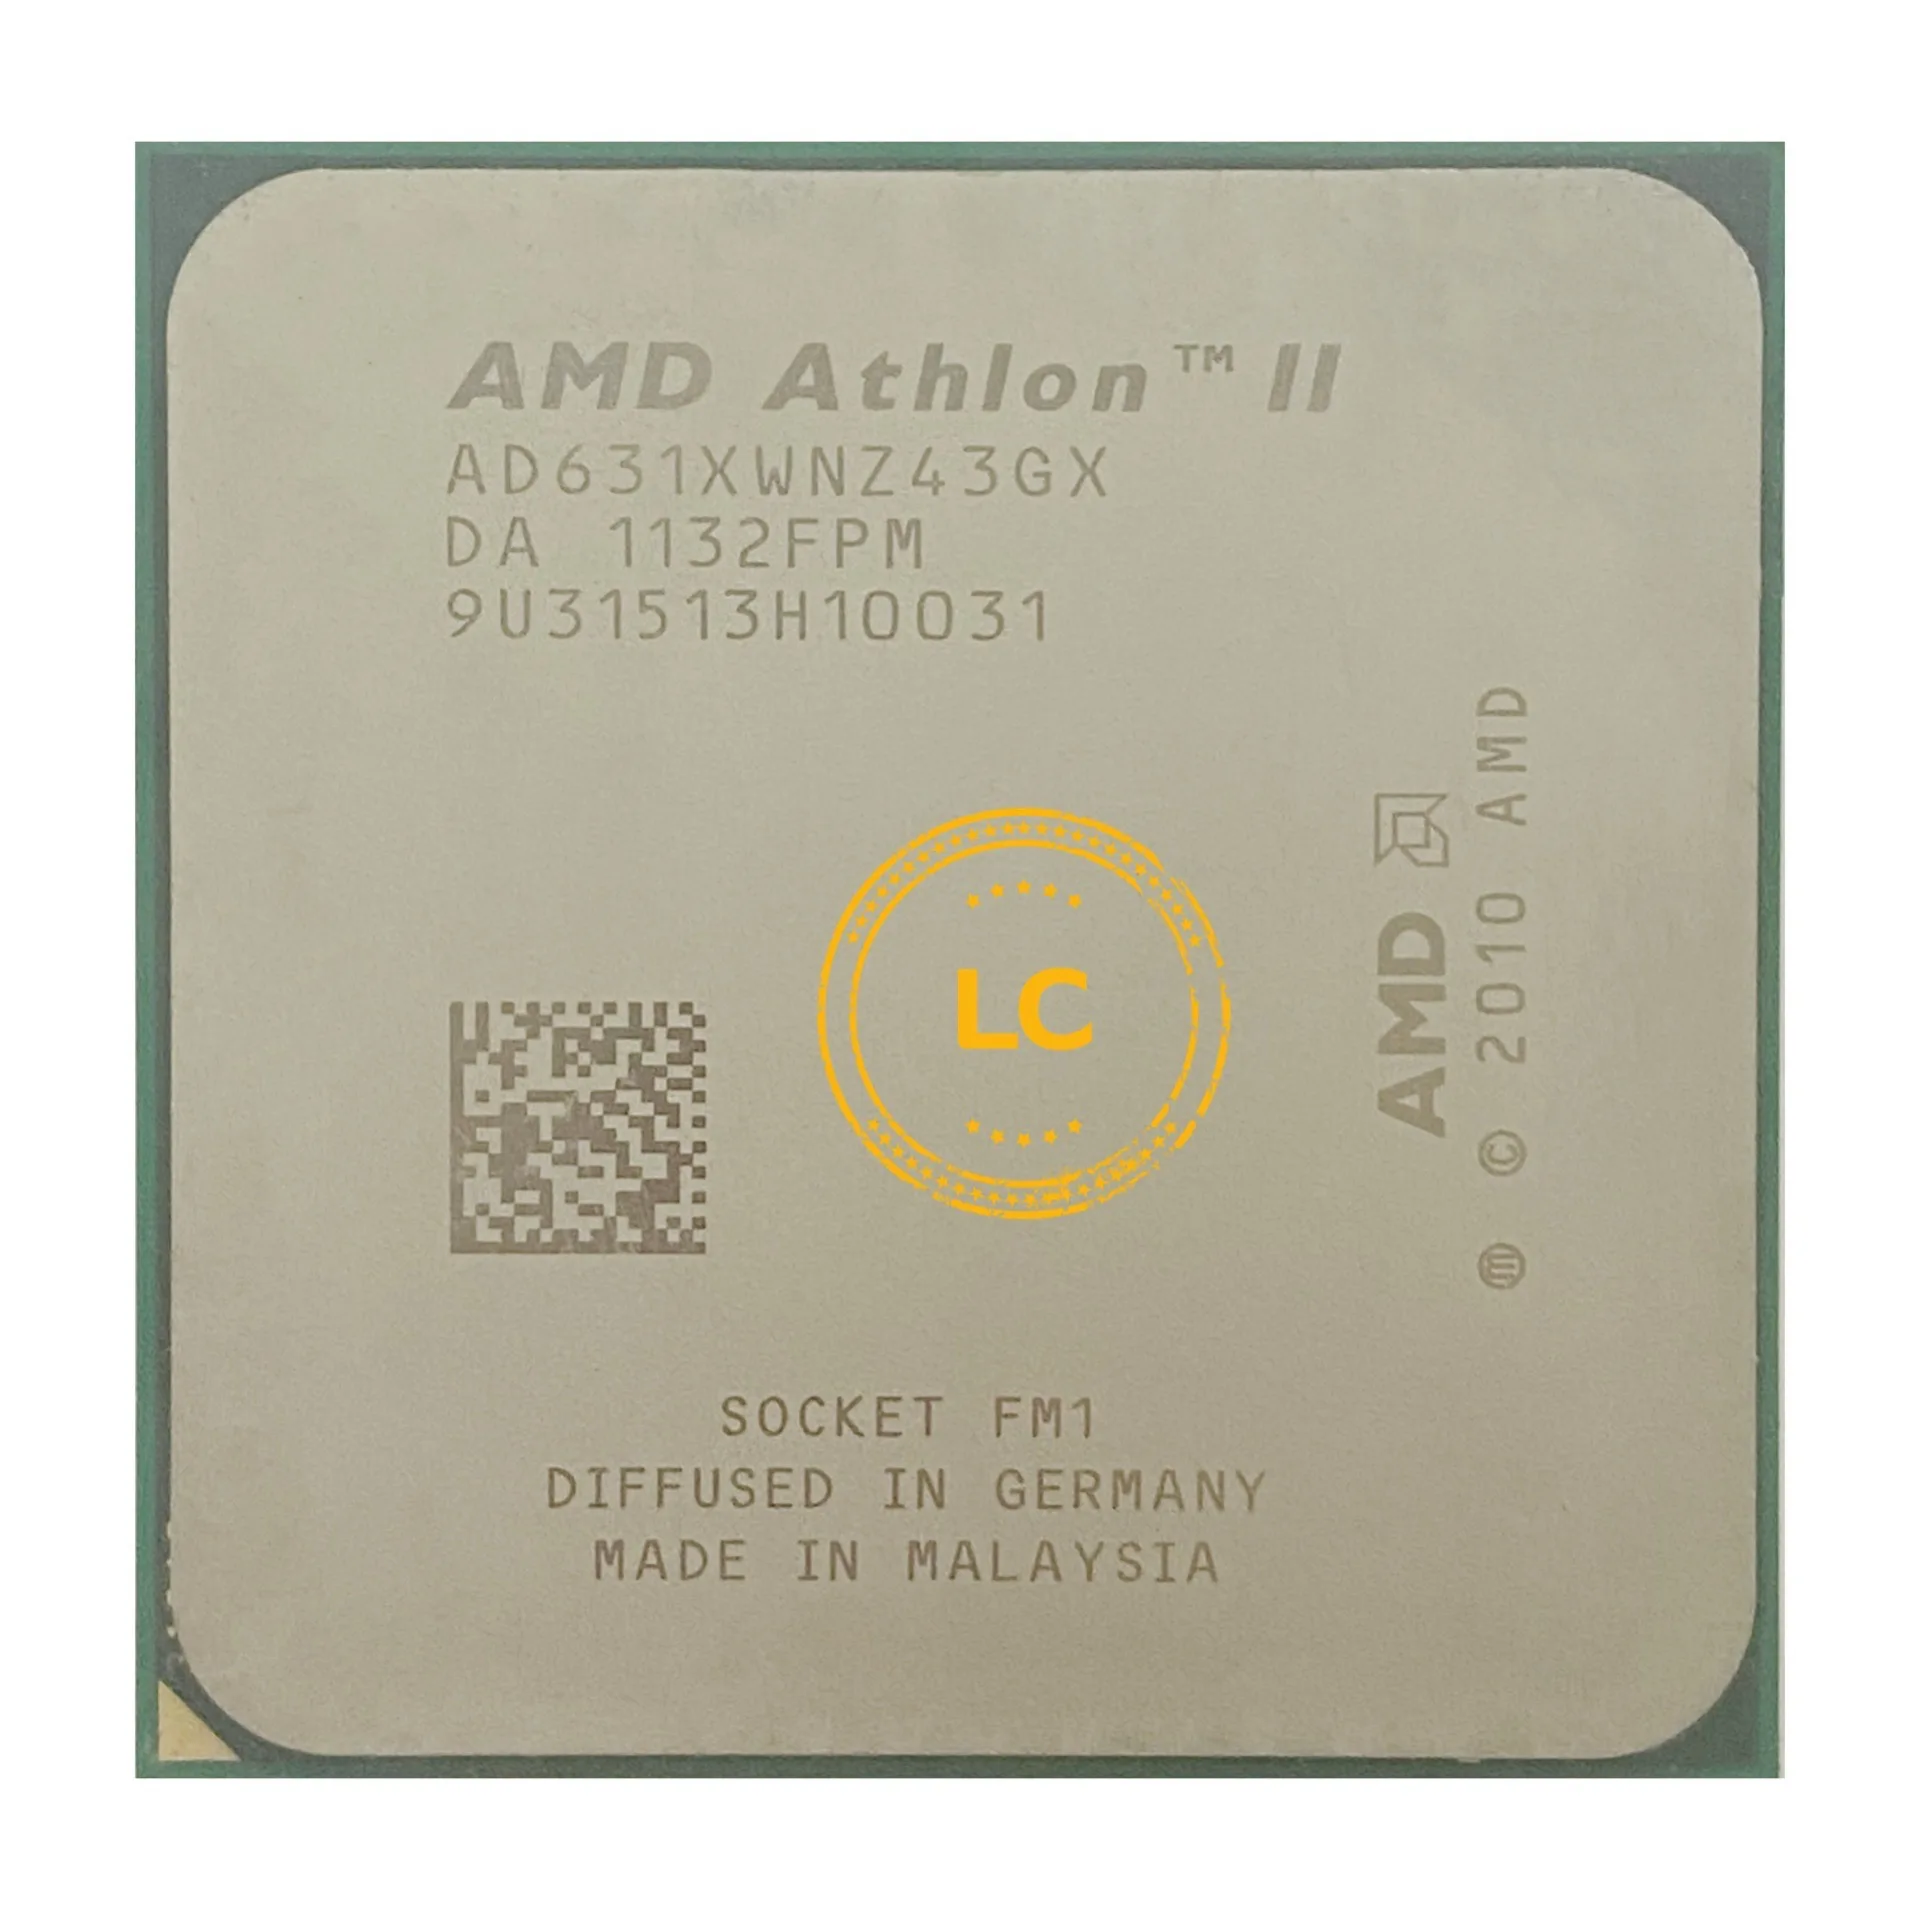 AMD Athlon II X4 631 2.6GHz 4x1 MB L2 Cache Socket FM1 100W Quad-Core Desktop Processor Retail AD631XWNGXBOX 